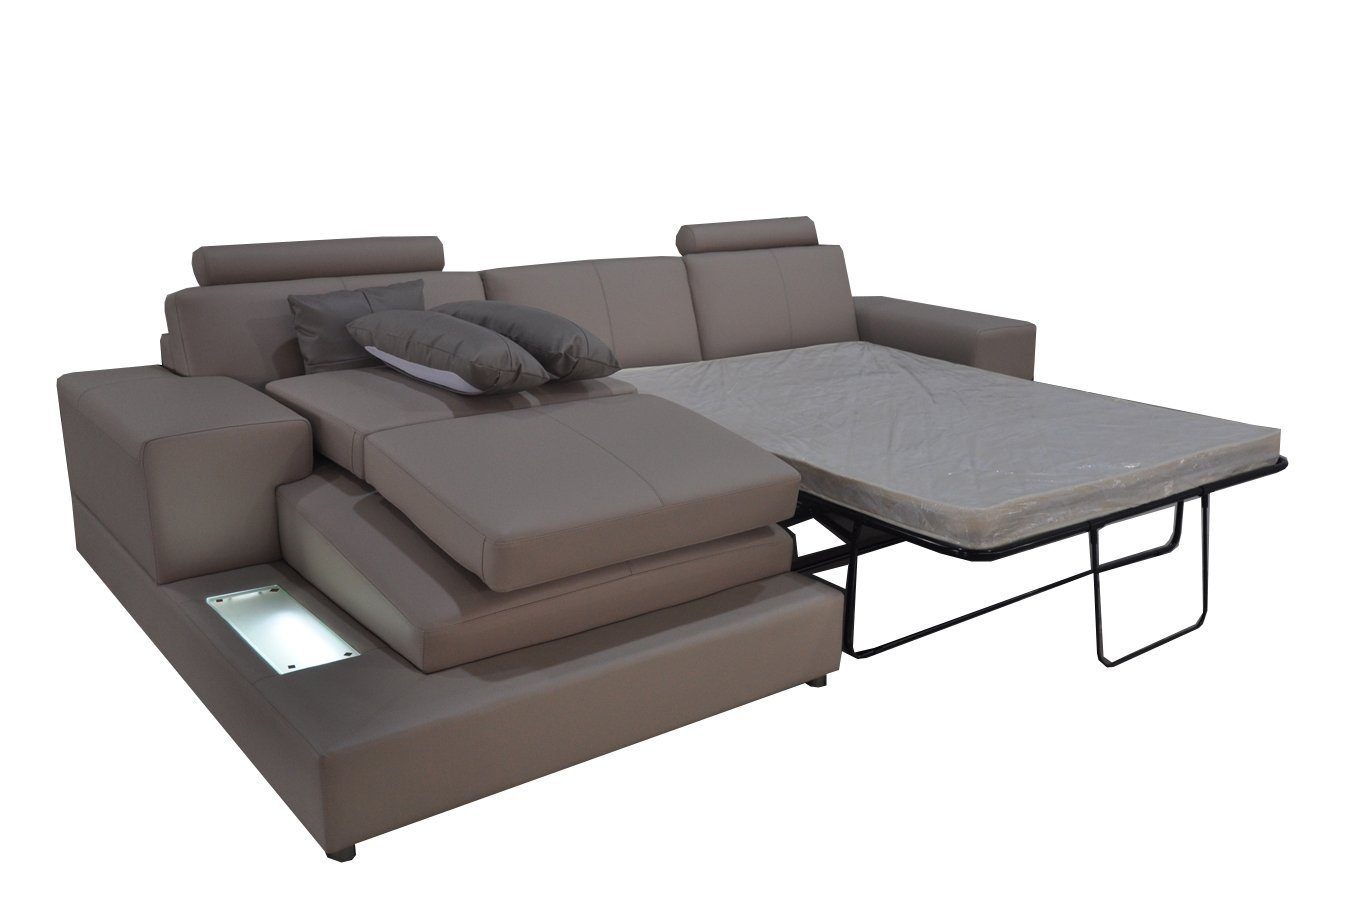 JVmoebel Ecksofa, Leder Couch Wohnlandschaft L-Form Modern Schlaf Sofa Eck Design